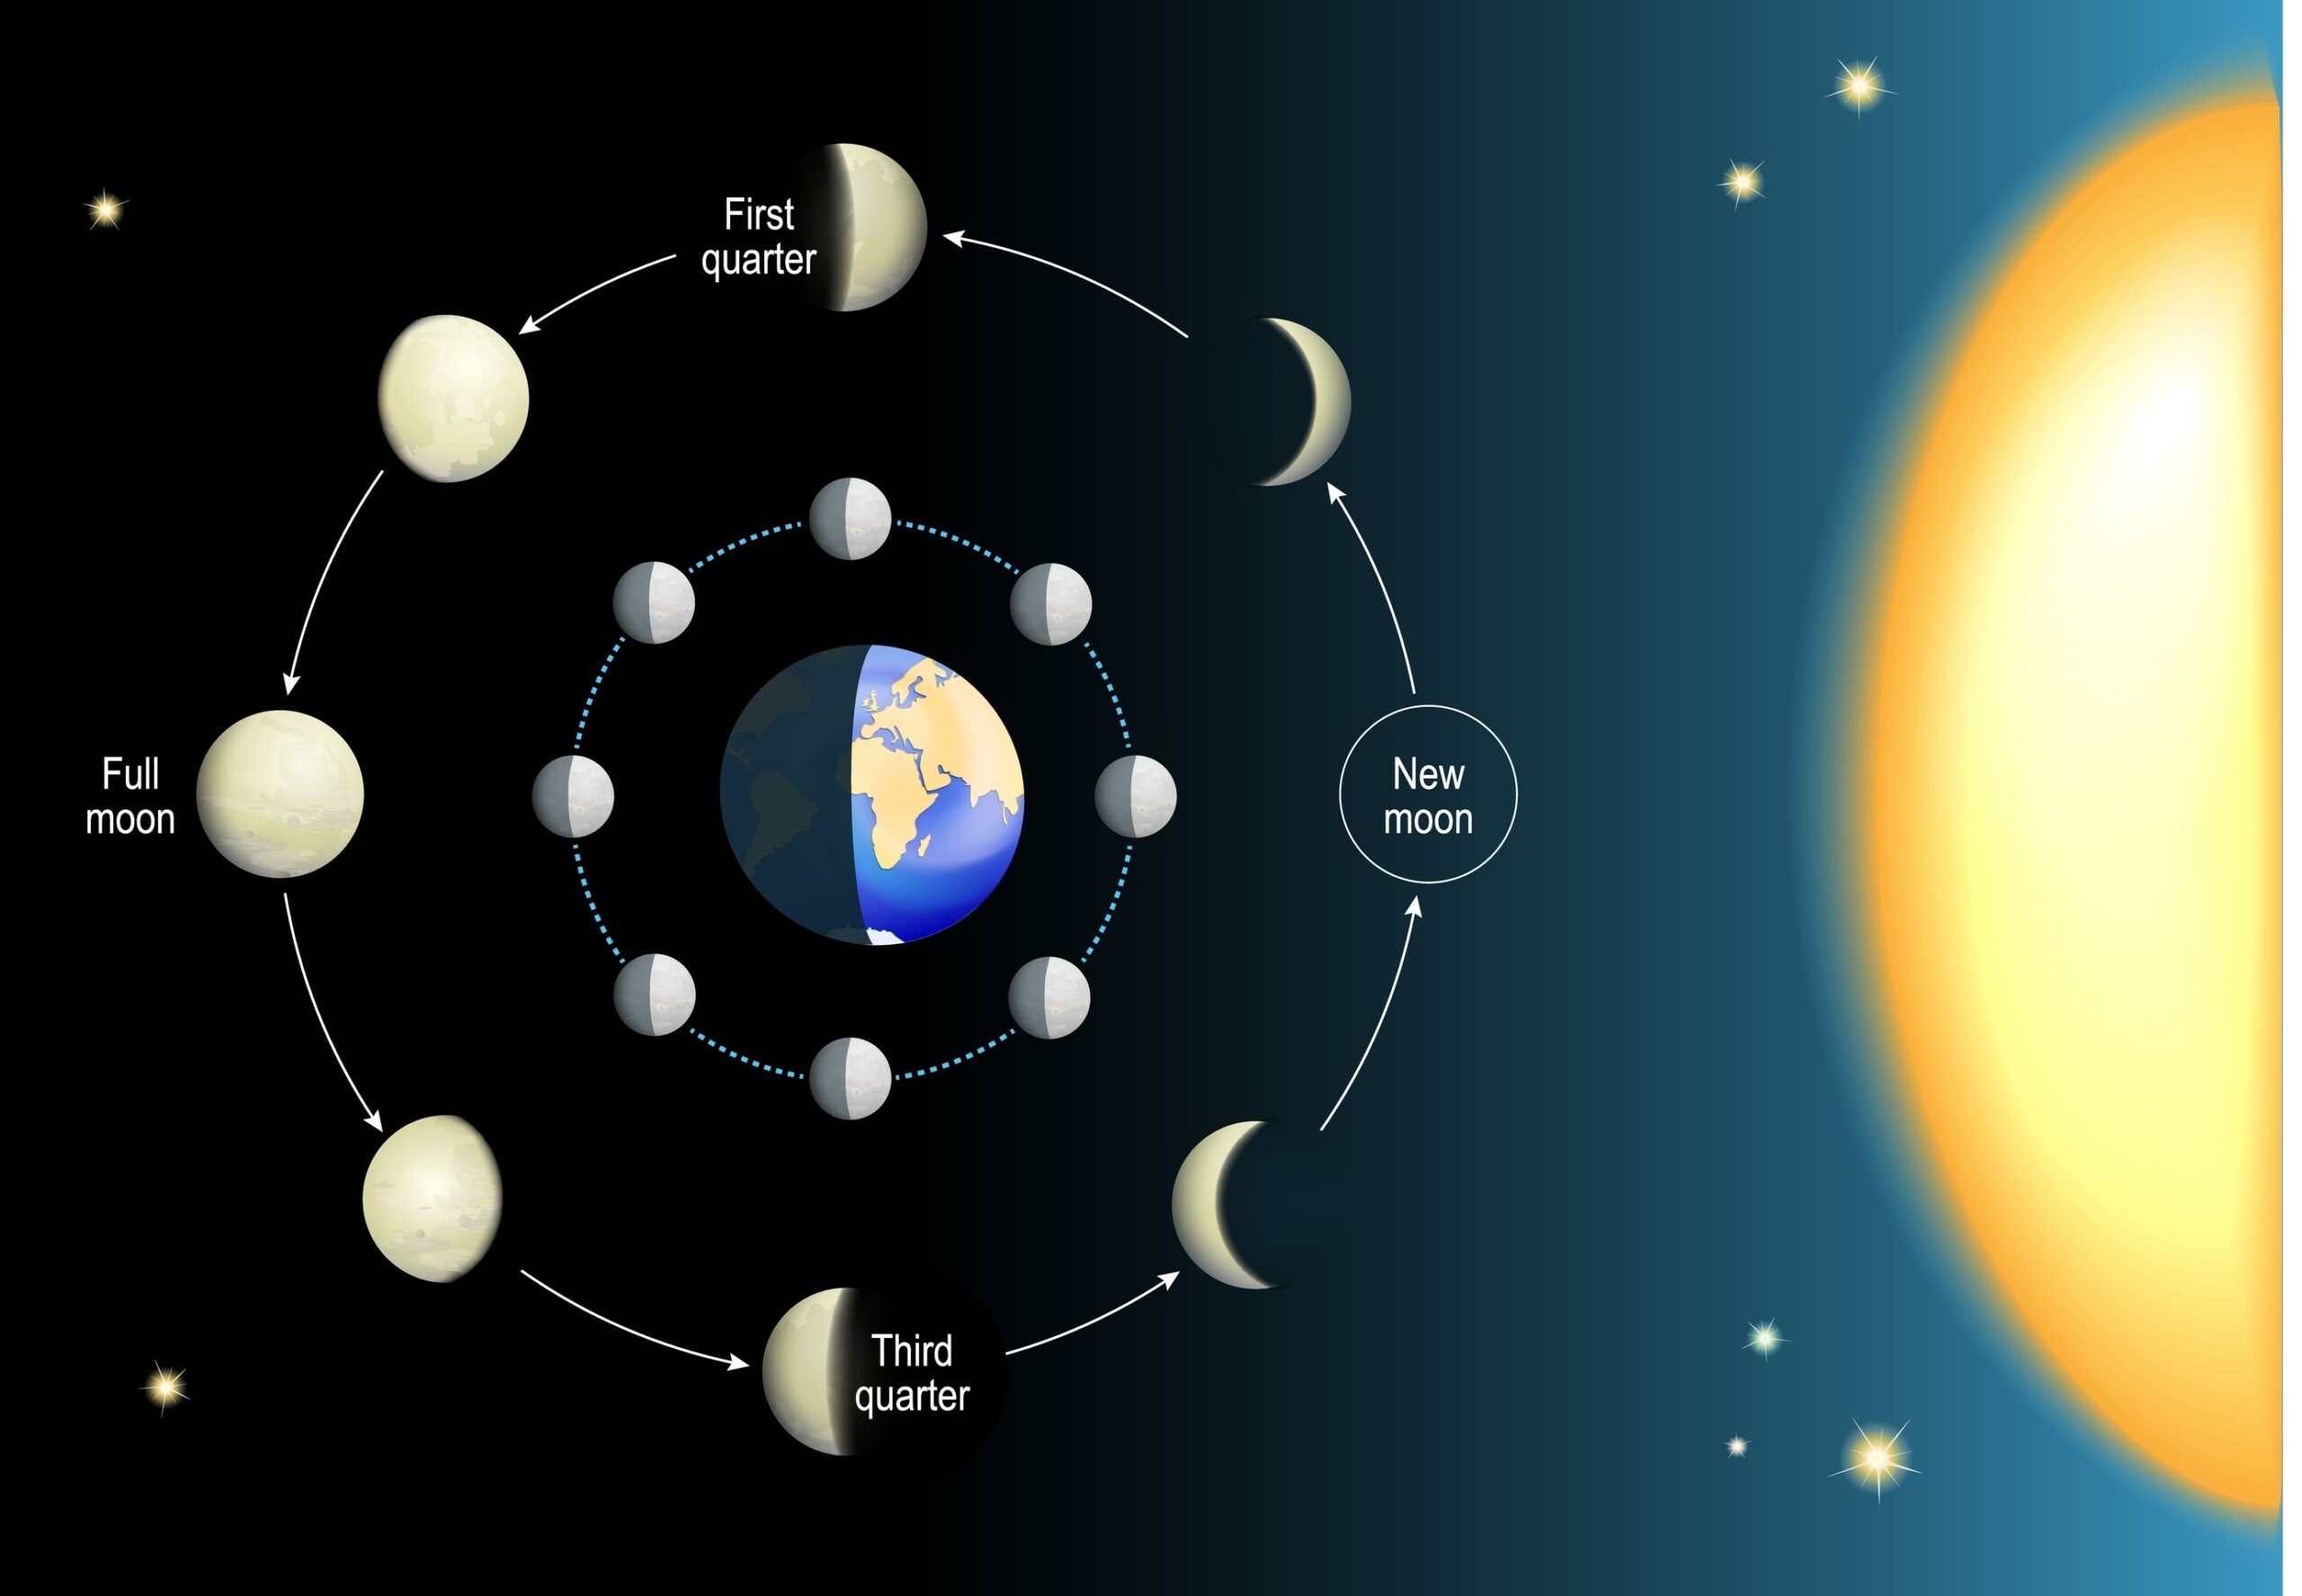 כאשר דנים במושגים אסטרונומיים מורכבים כמו המרחק של כדור הארץ מהשמש והירח עם ילדים, חשוב להפוך את המידע לנגיש ומרתק.